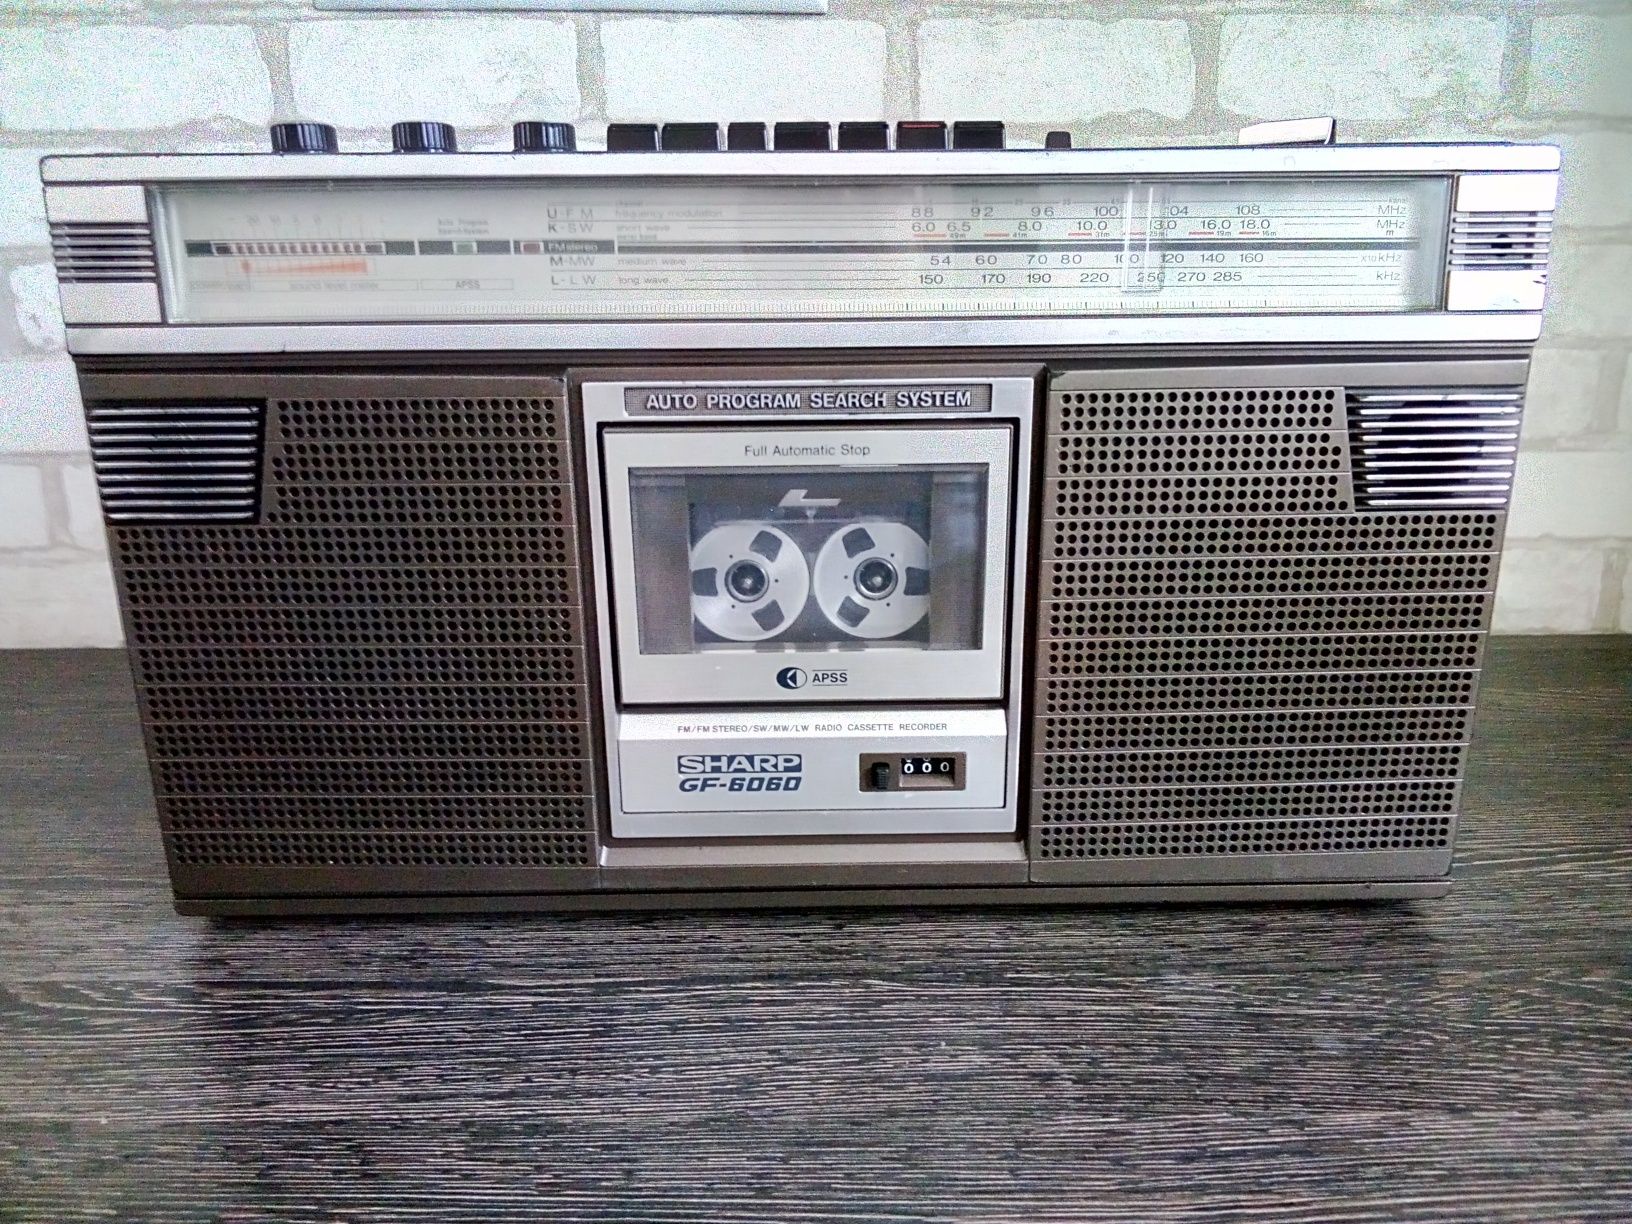 Sharp GF-6060HB Stereo Radio - Tape Recorder